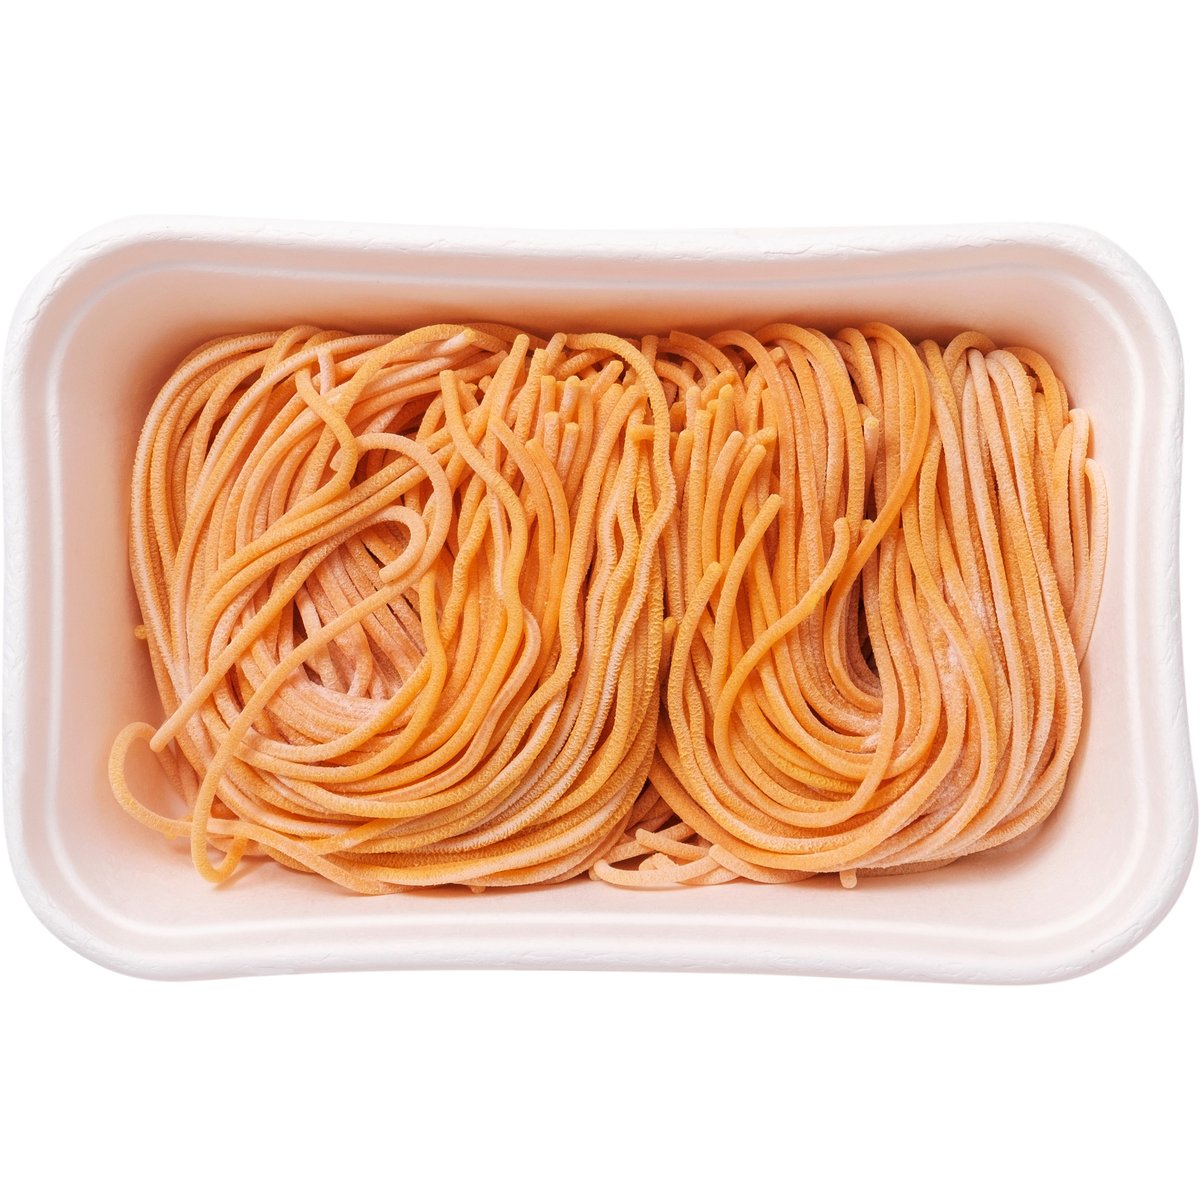 Čerstvá pasta Spaghetti saferano